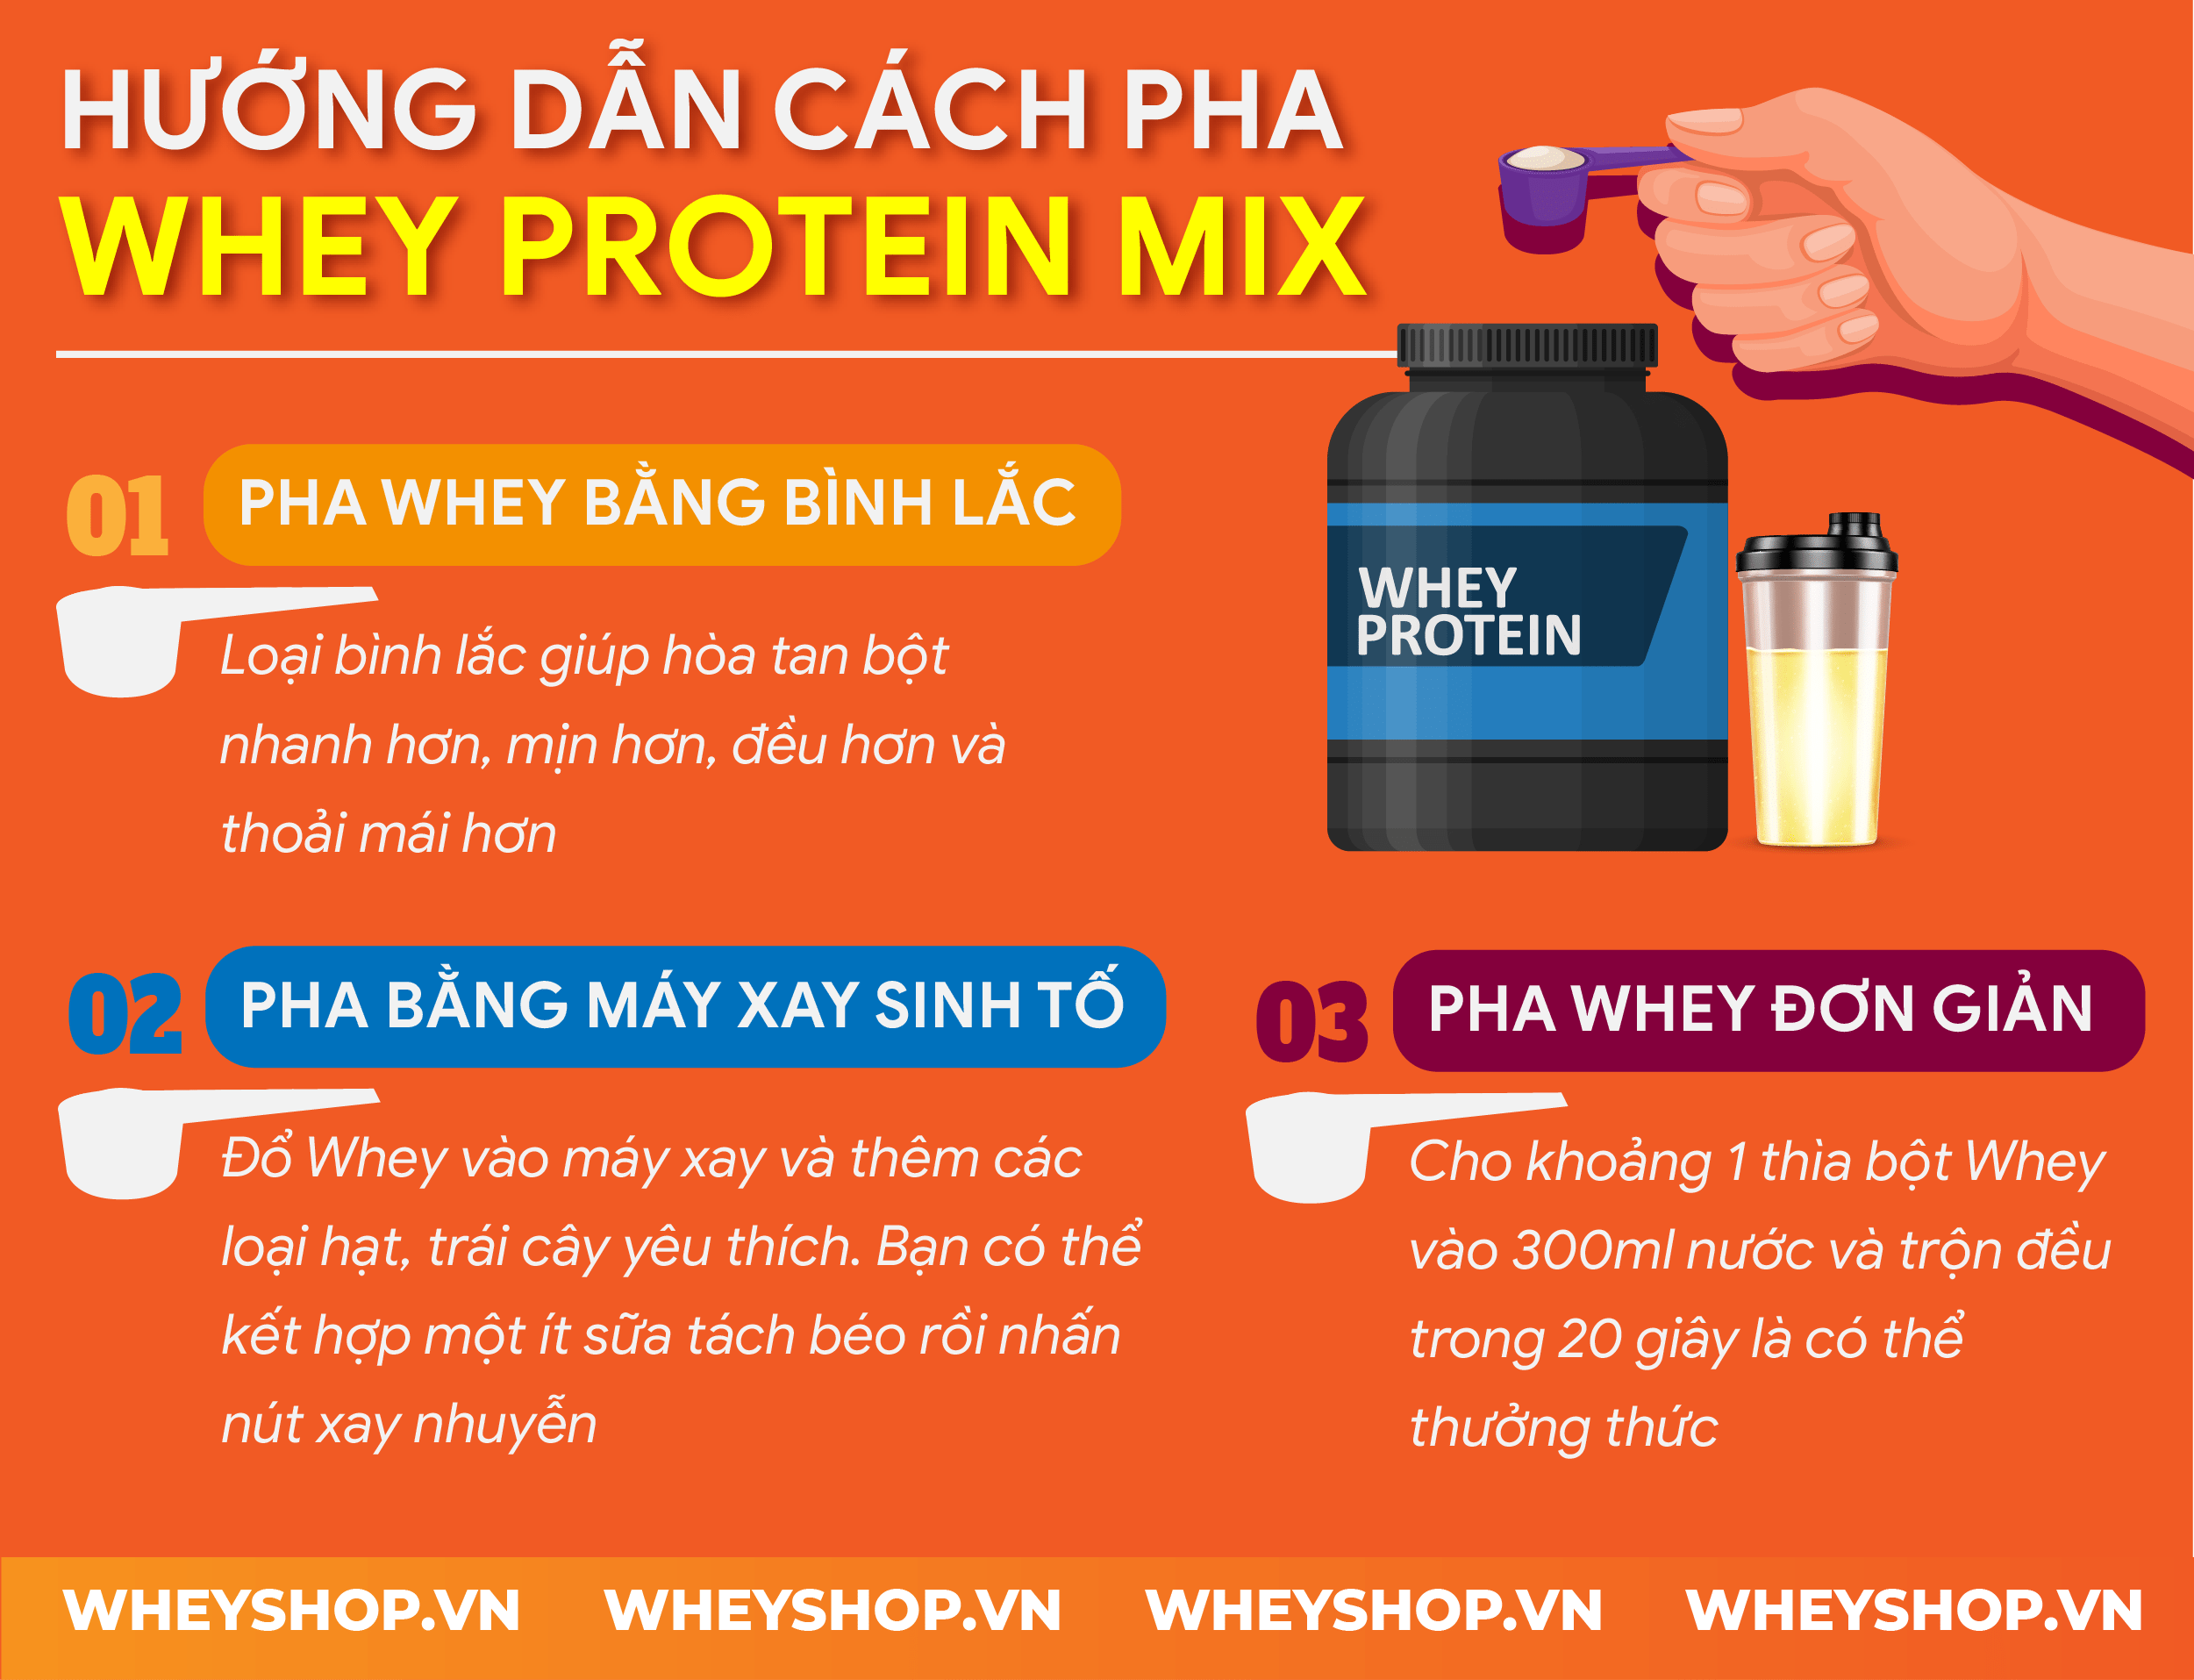 Nếu bạn đang tìm cách pha Whey Protein mix tạo nên thức uống thơm ngon, bổ dưỡng thì hãy cùng WheyShop điểm qua 50 cách mix whey trong bài...